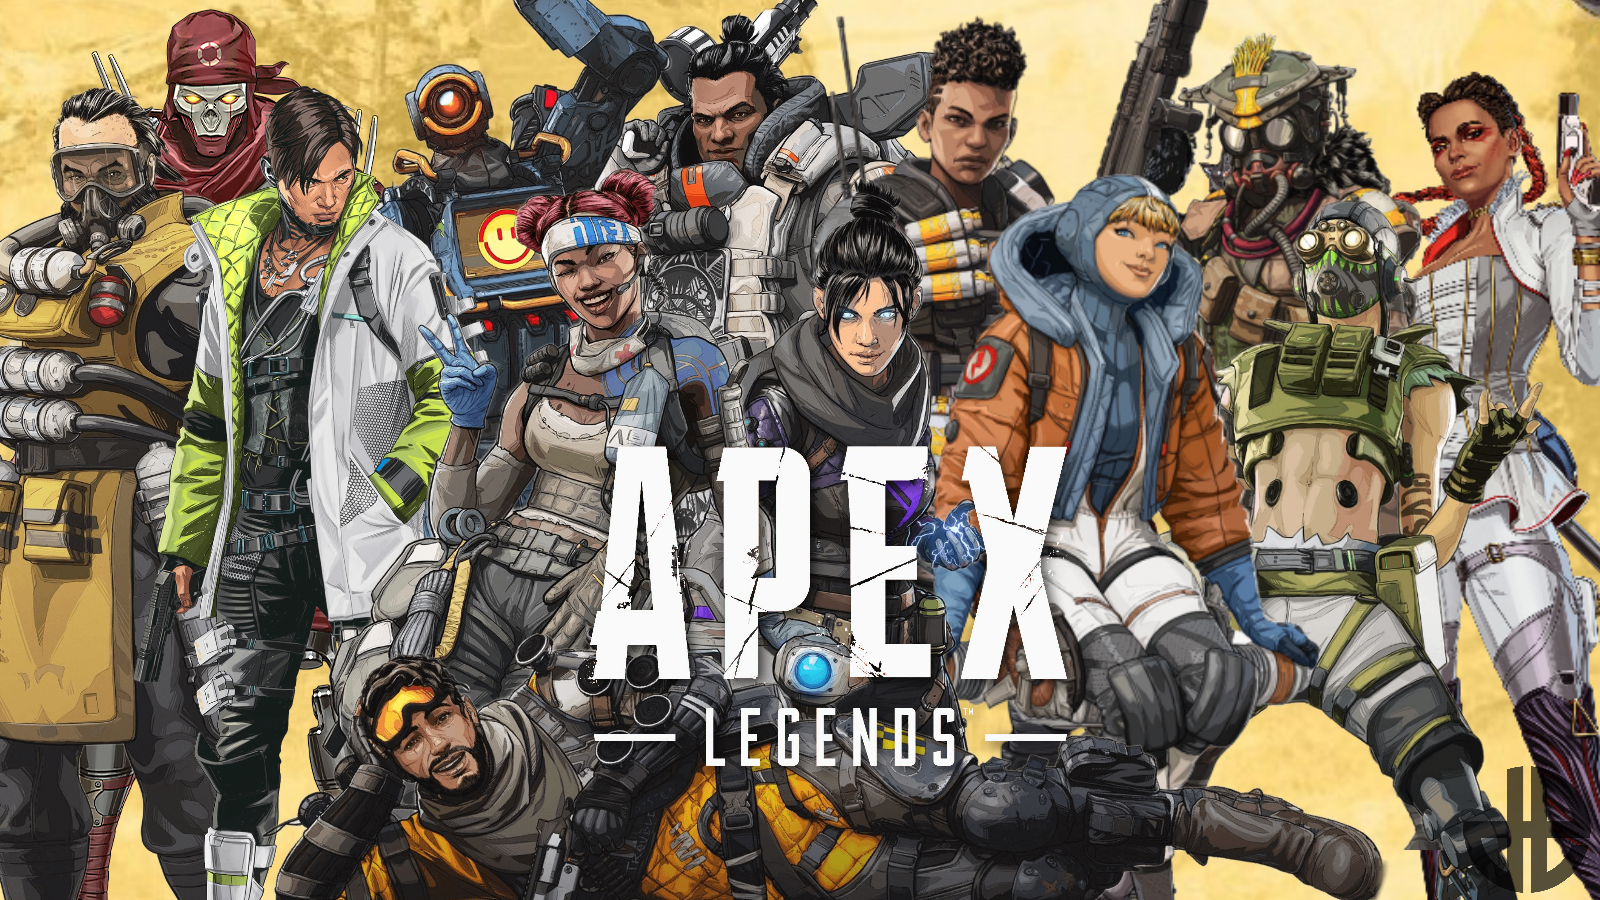 Apex Legends Mobile Pre Register Android & Download Link